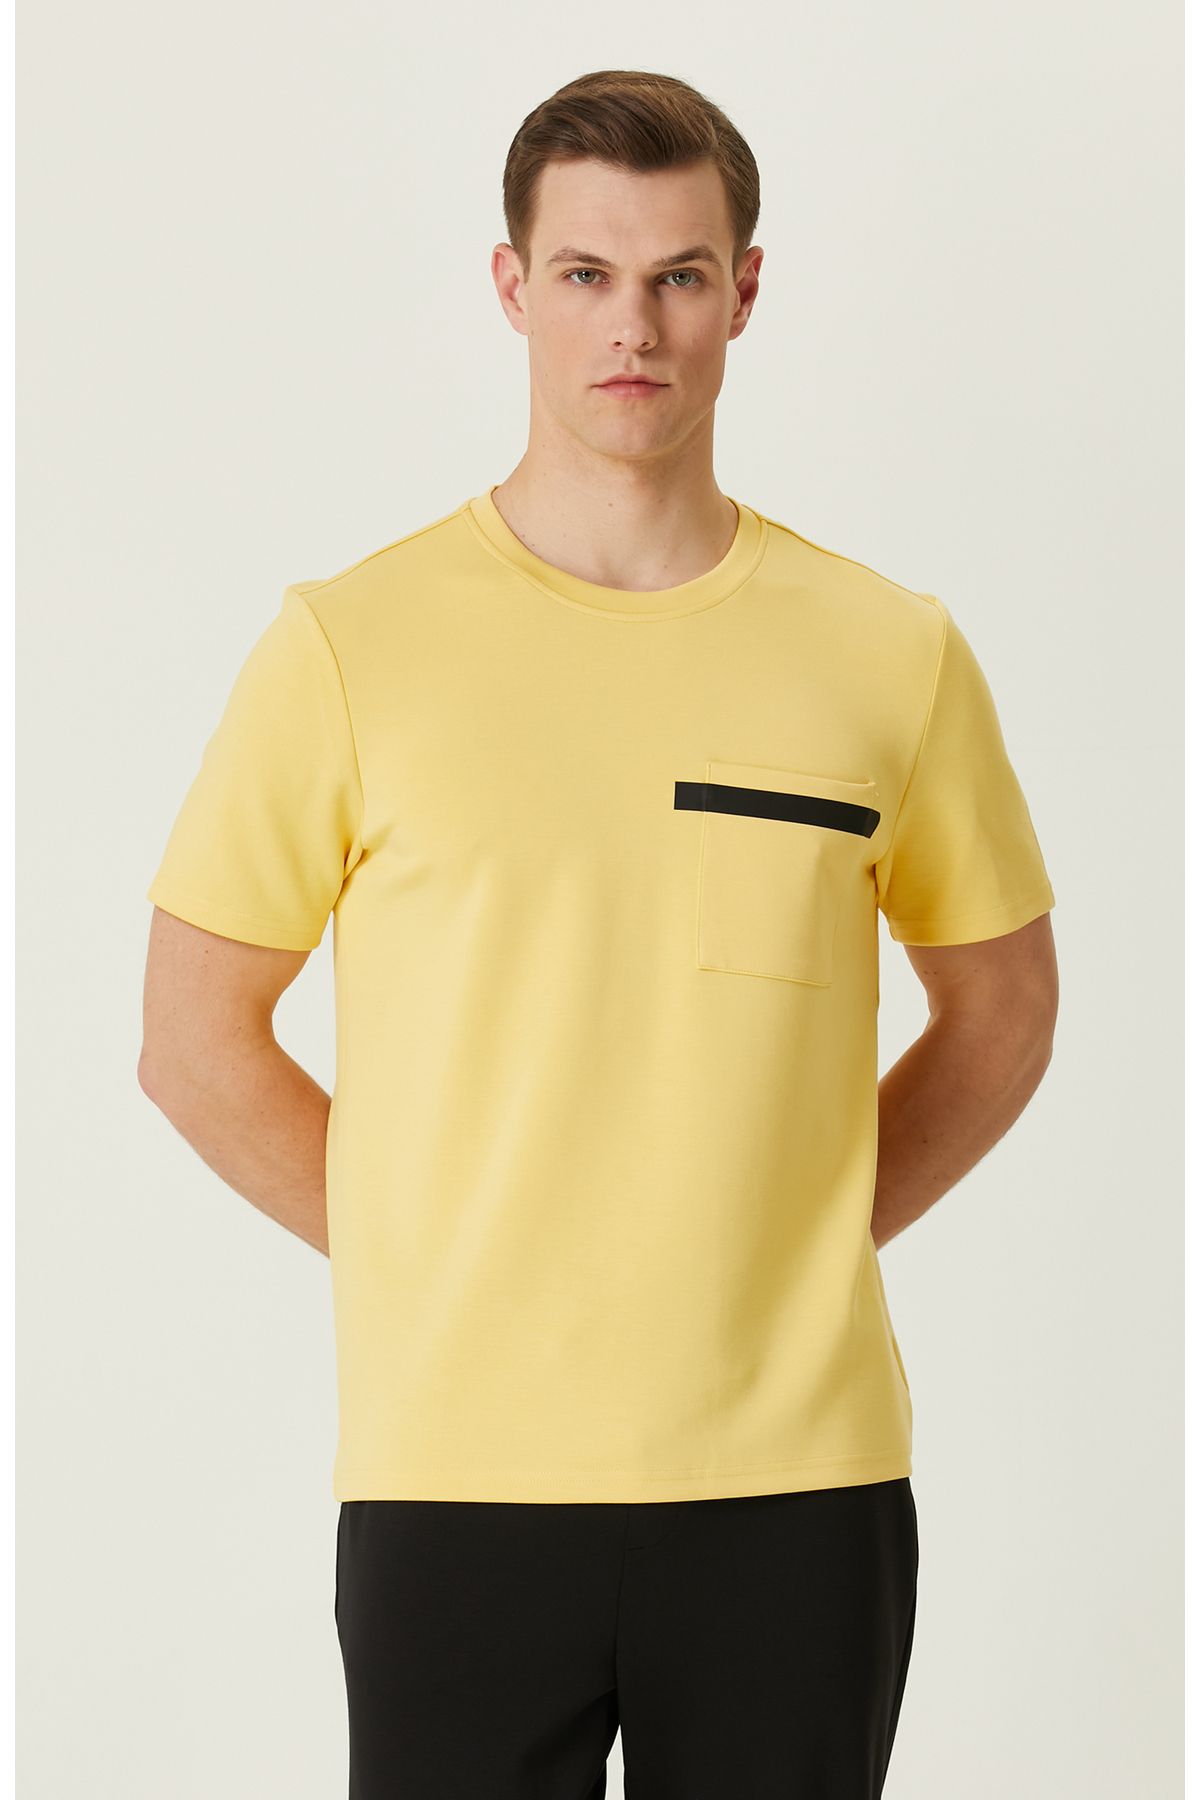 Network Sarı Baskılı T-shirt